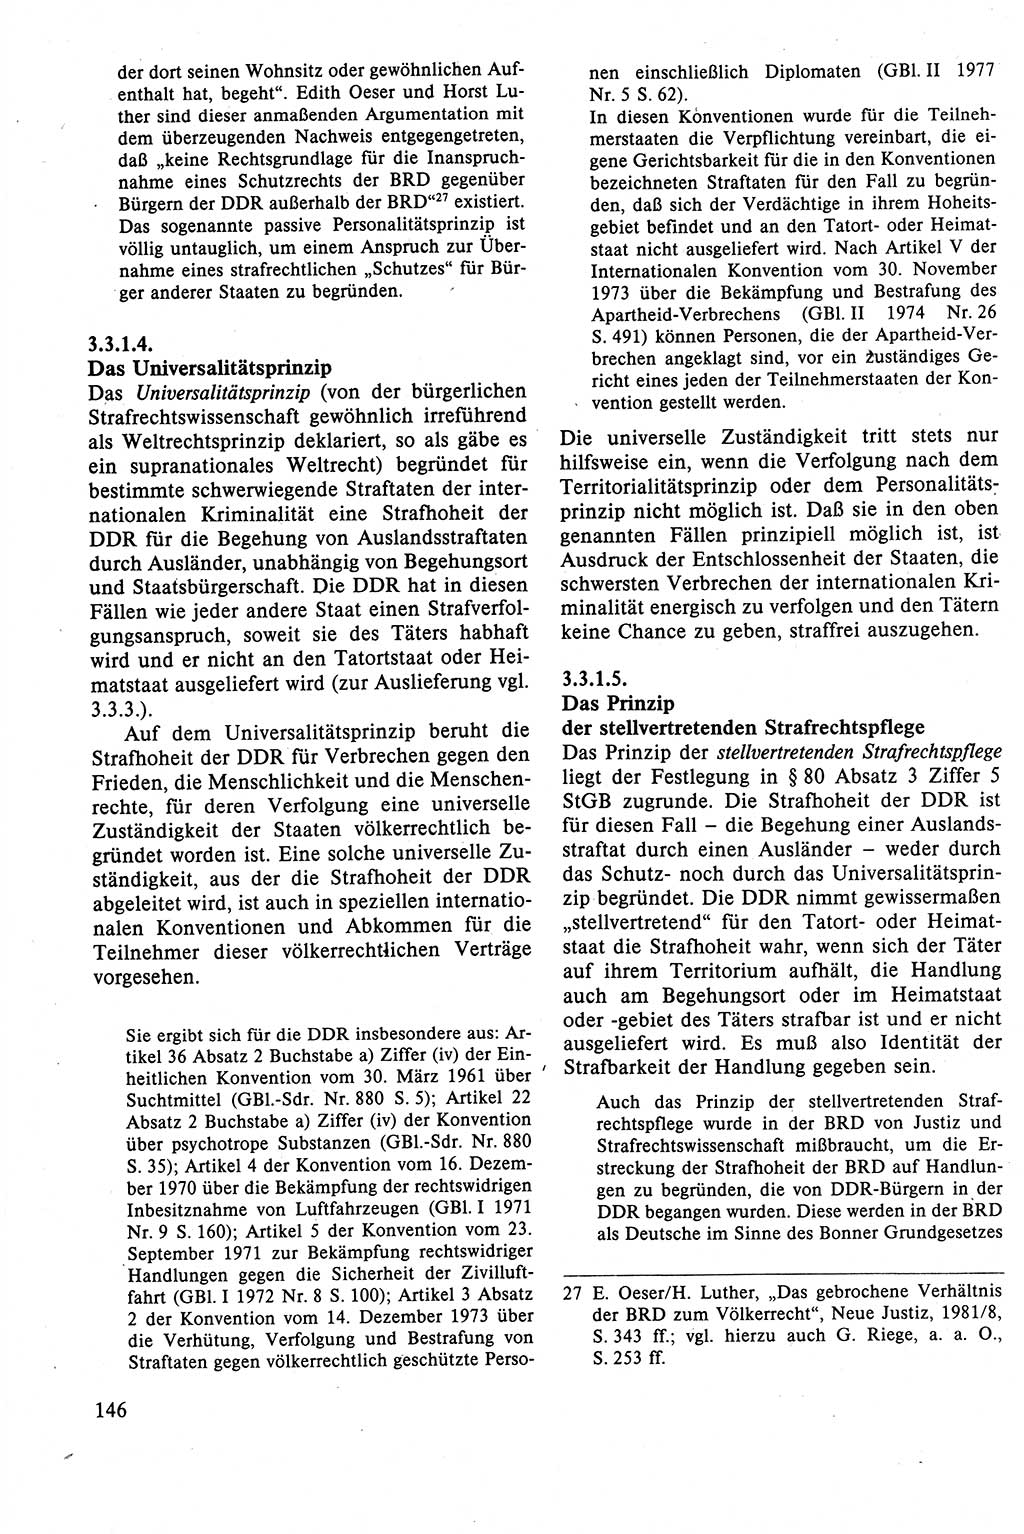 Strafrecht der DDR (Deutsche Demokratische Republik), Lehrbuch 1988, Seite 146 (Strafr. DDR Lb. 1988, S. 146)